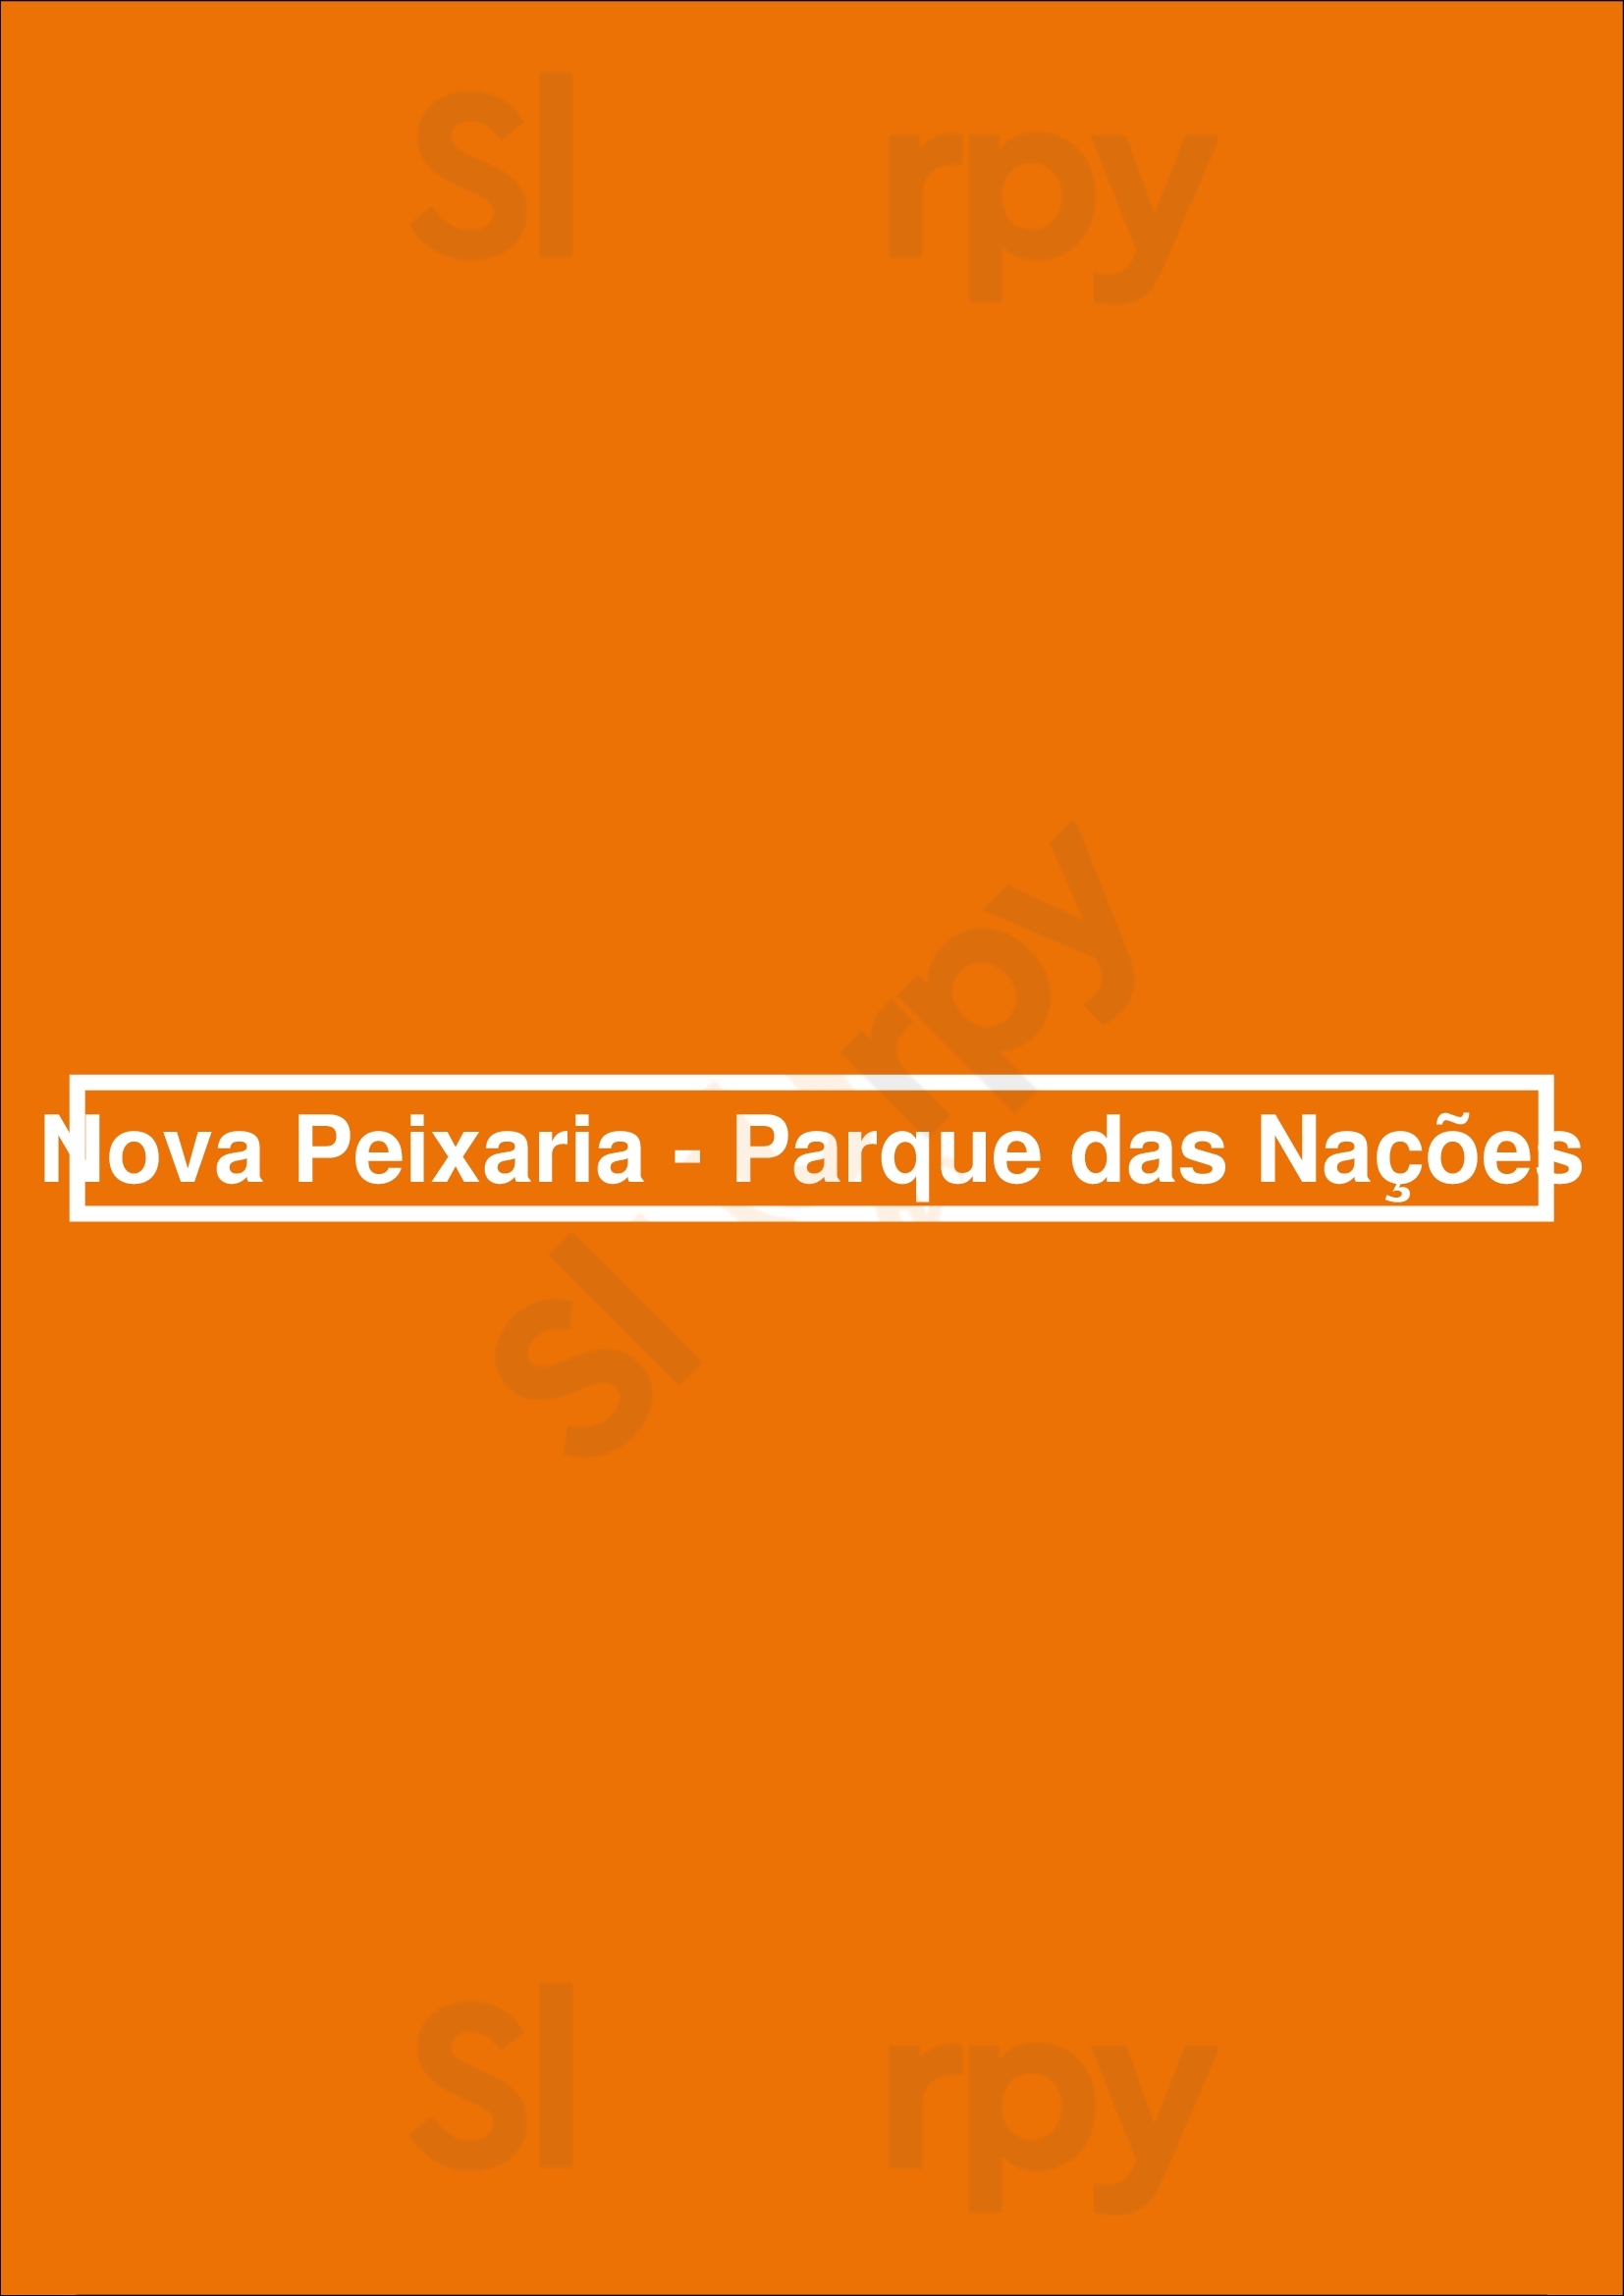 Nova Peixaria - Parque Das Nações Lisboa Menu - 1